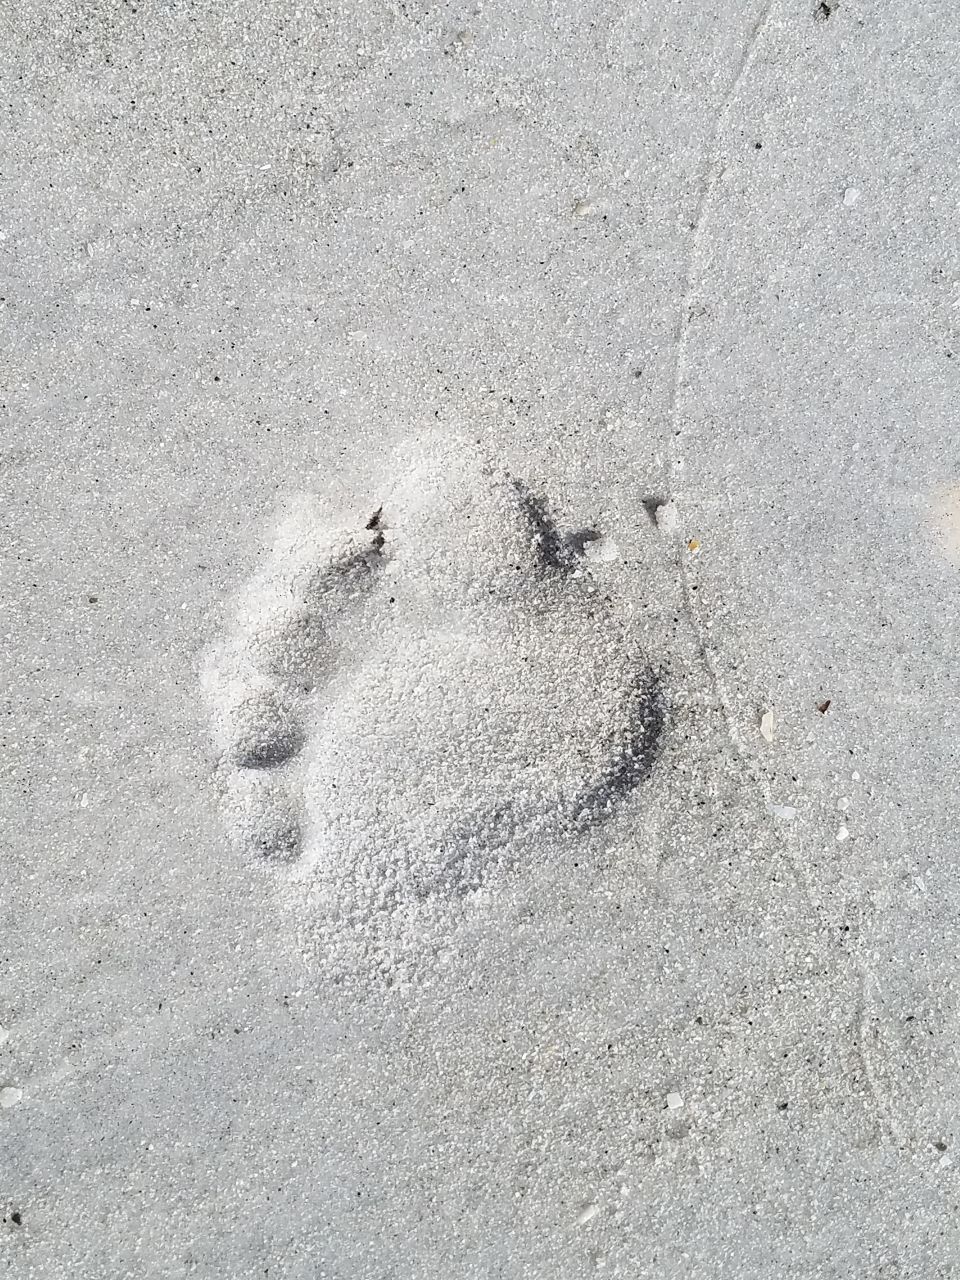 foot print